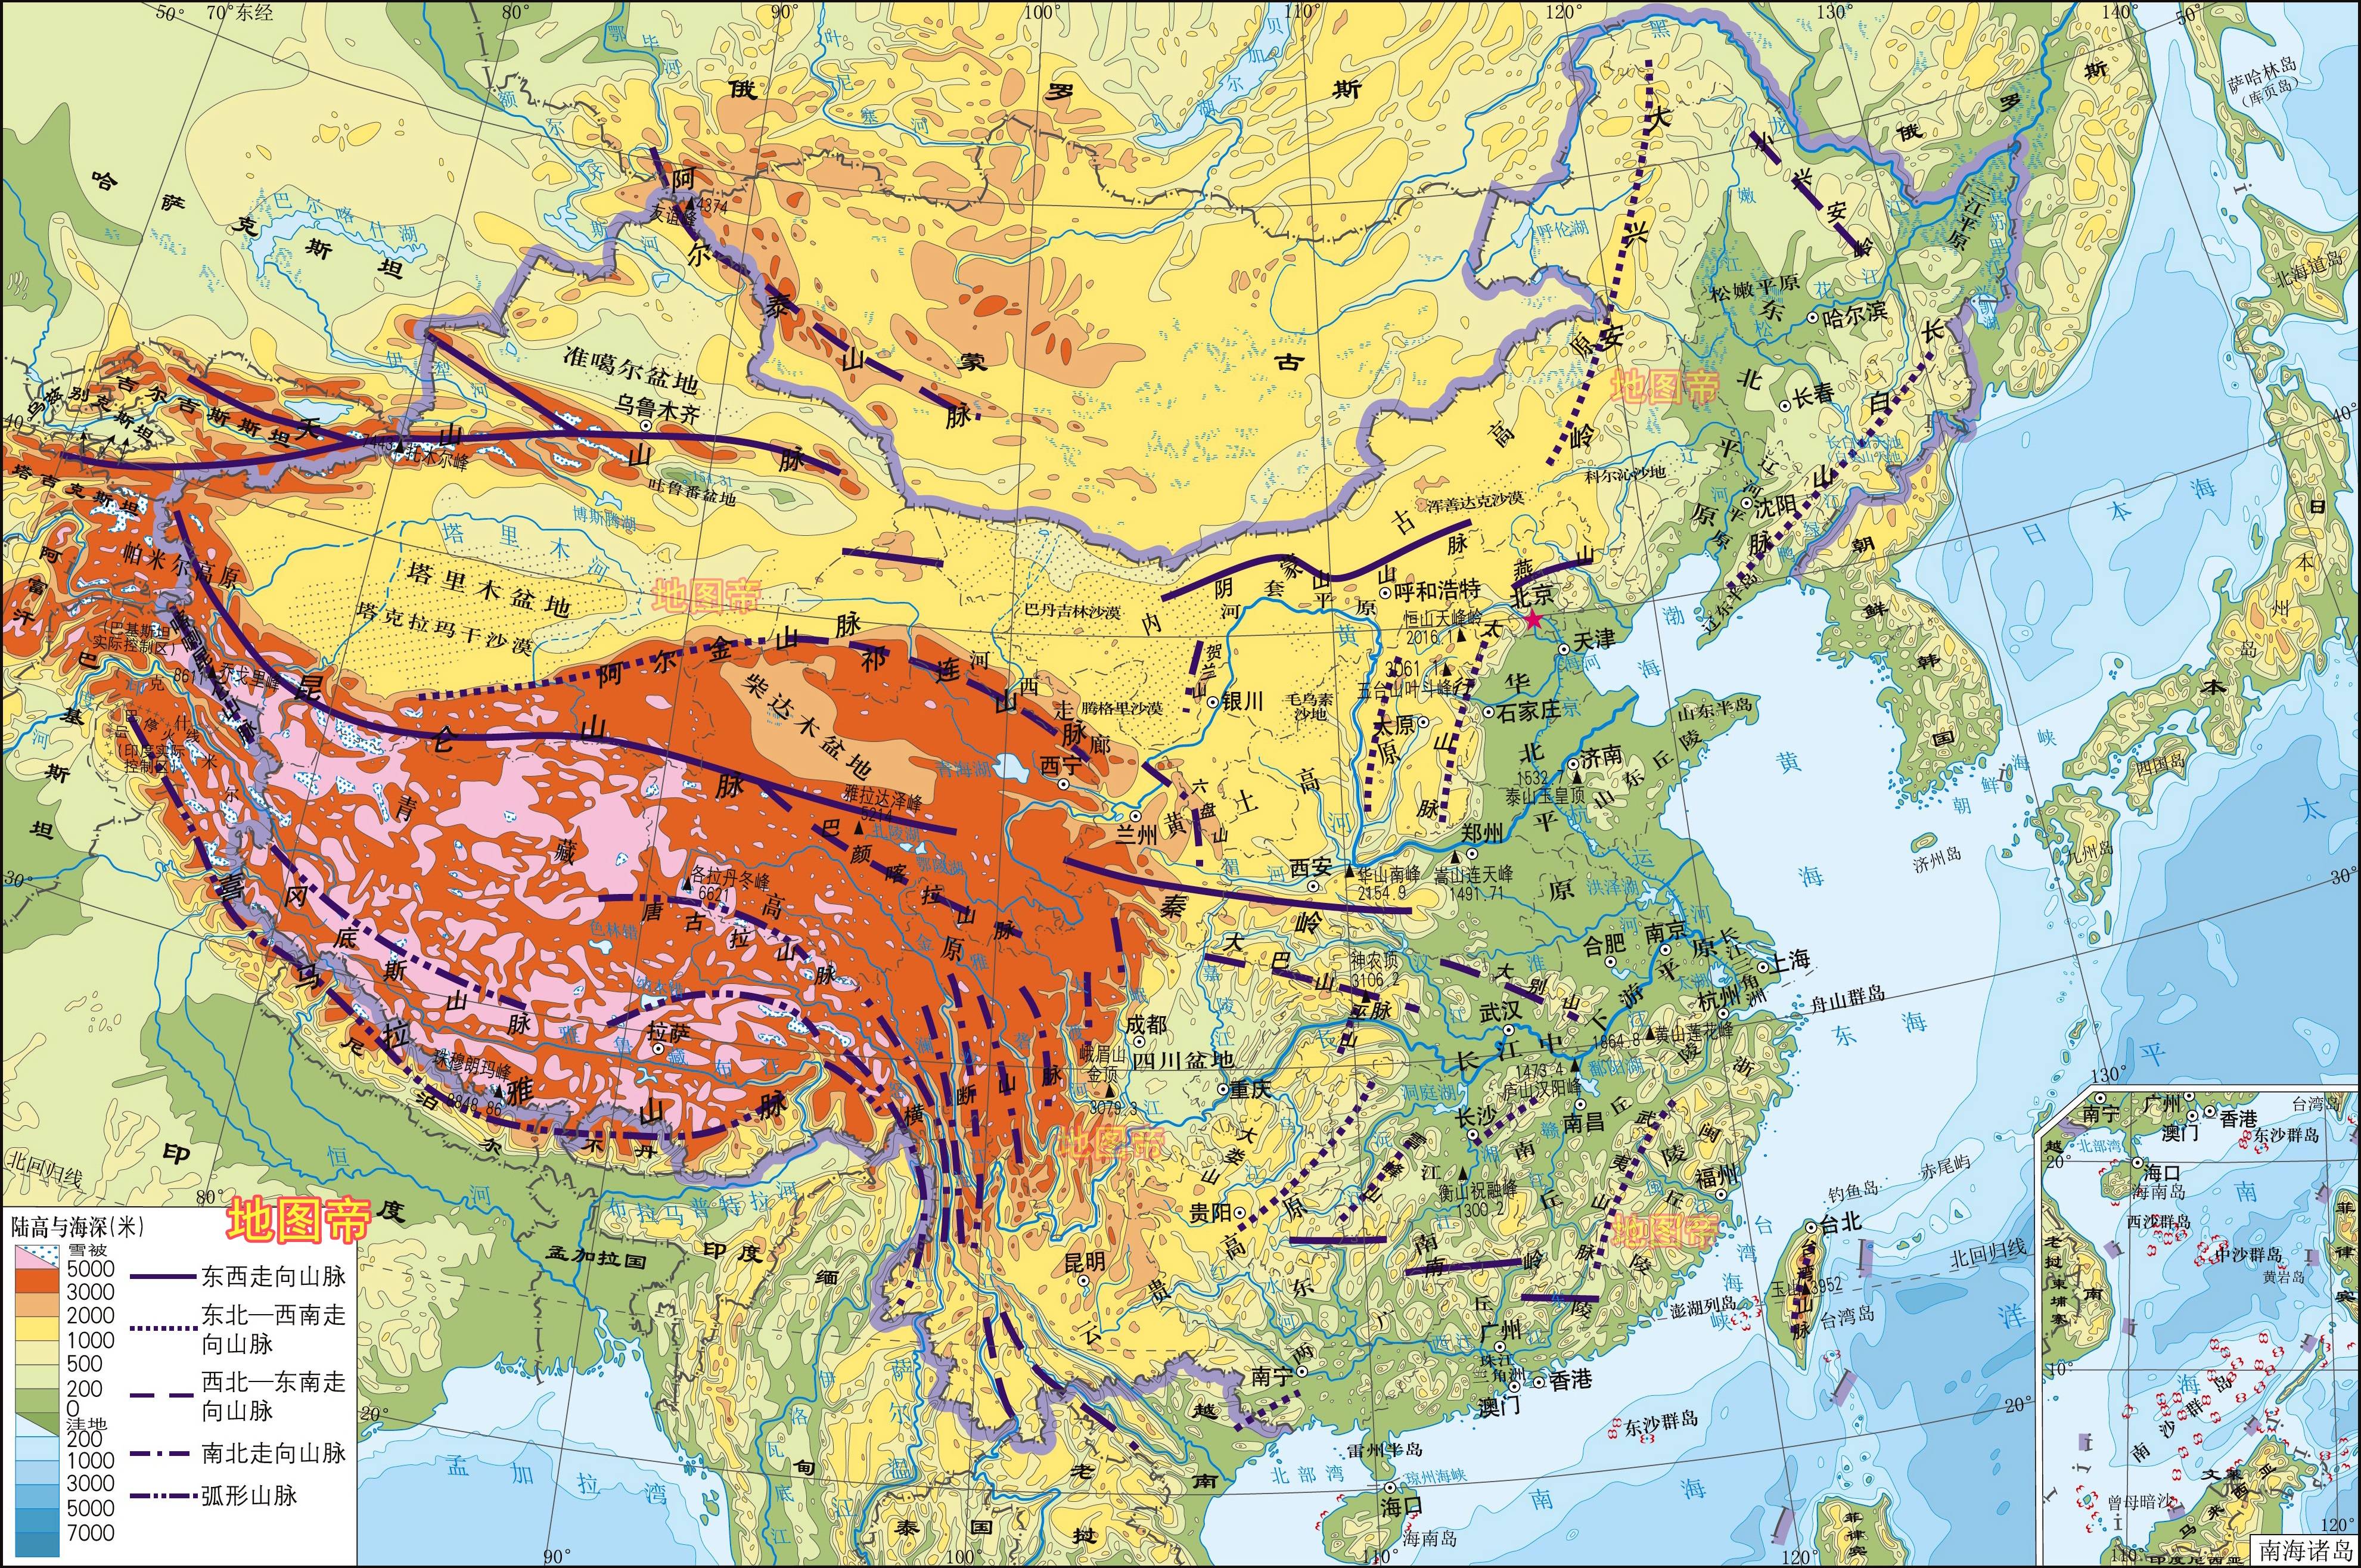 今天带和大家分享祖国山河,中国局部的山川河流等历史地理知识.